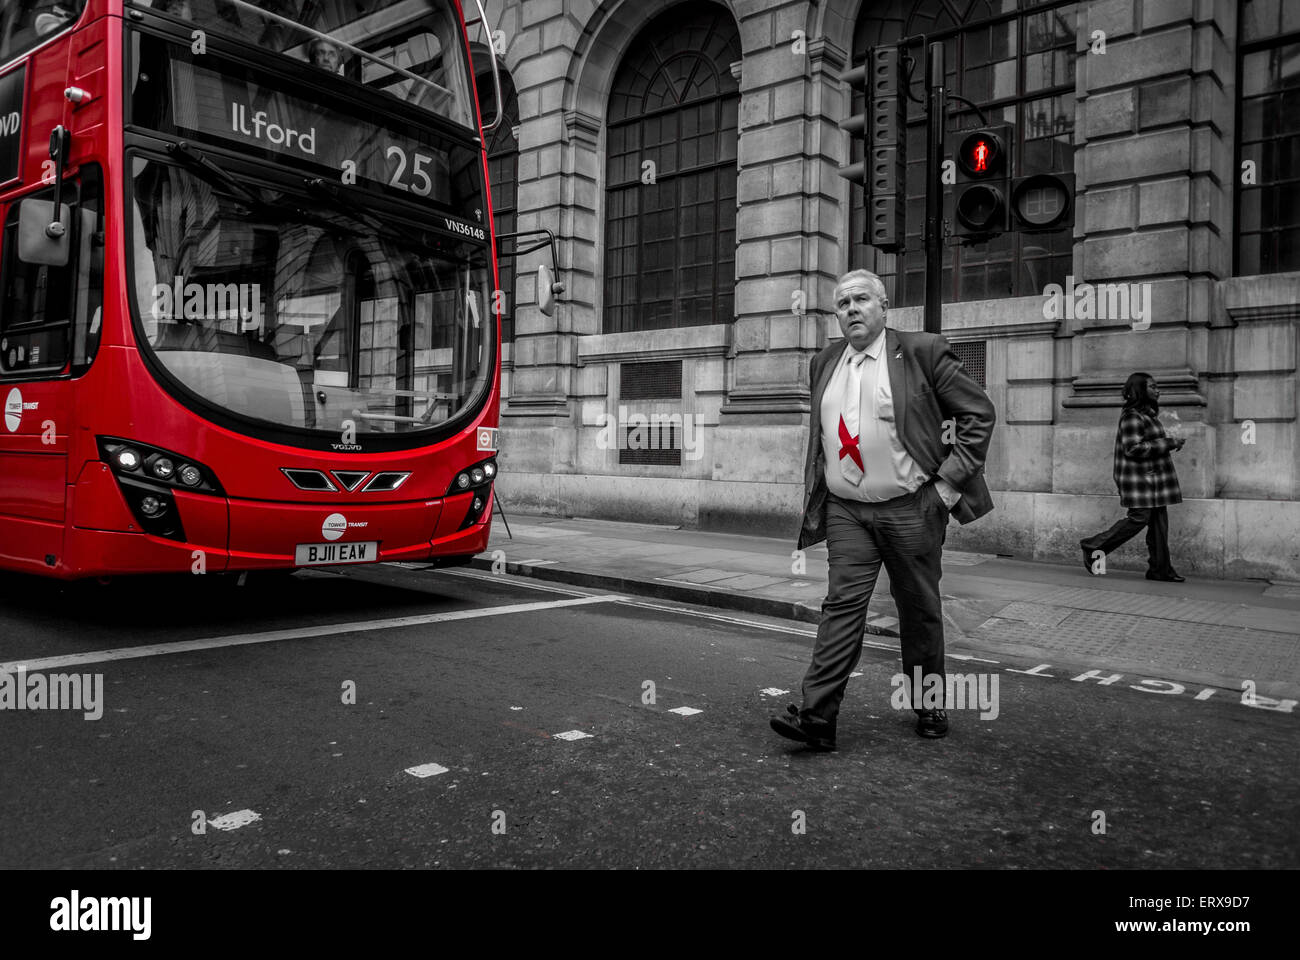 Empresario con corbata bandera inglesa crossing road en frente de red double decker bus, Londres, Reino Unido. Foto de stock